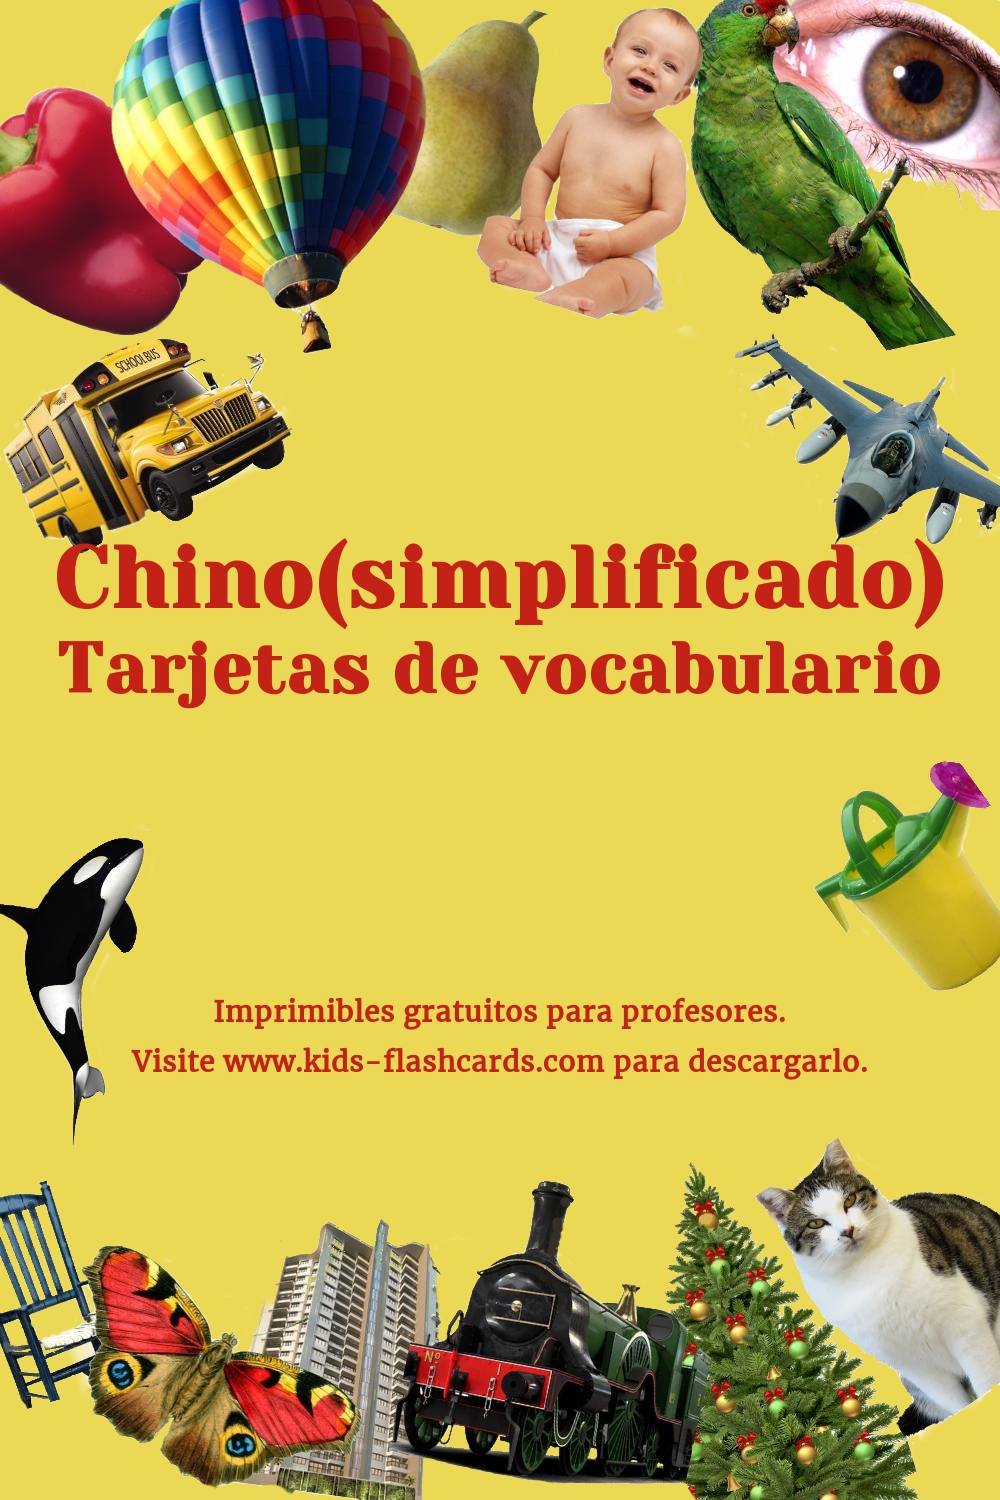 Imprimibles Gratuitos en Chino(simplificado)